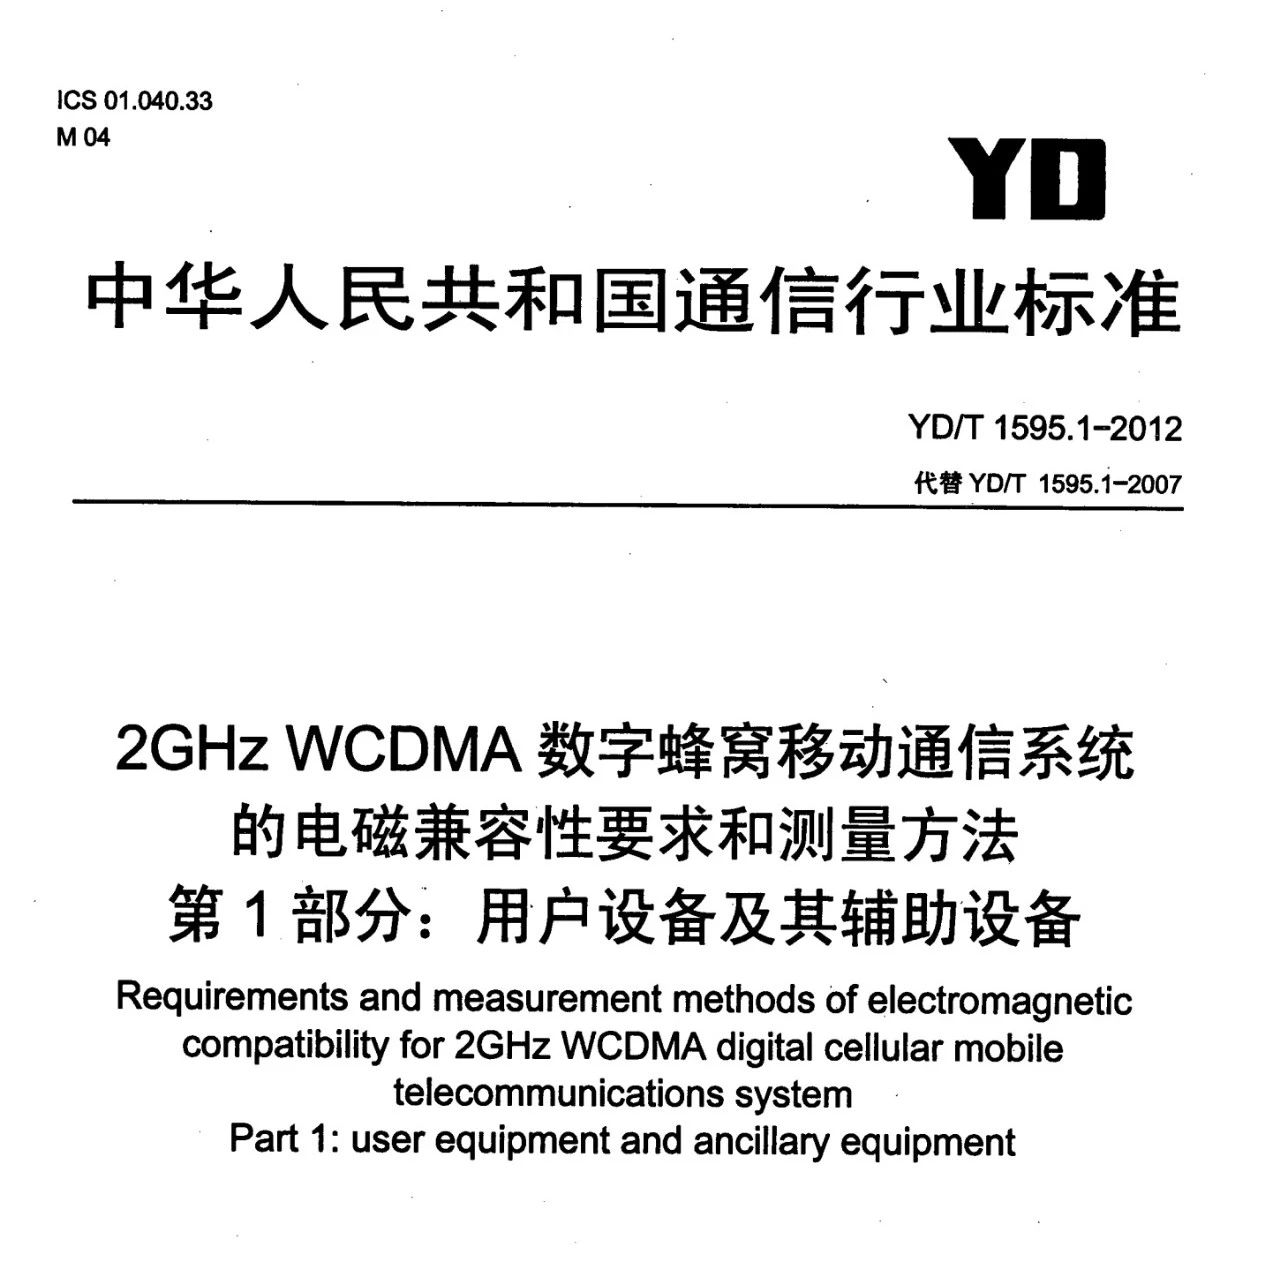 YD/T 1595.1-2012 2GHz WCDMA数字蜂窝移动通信系统电磁兼容性要求和测量方法